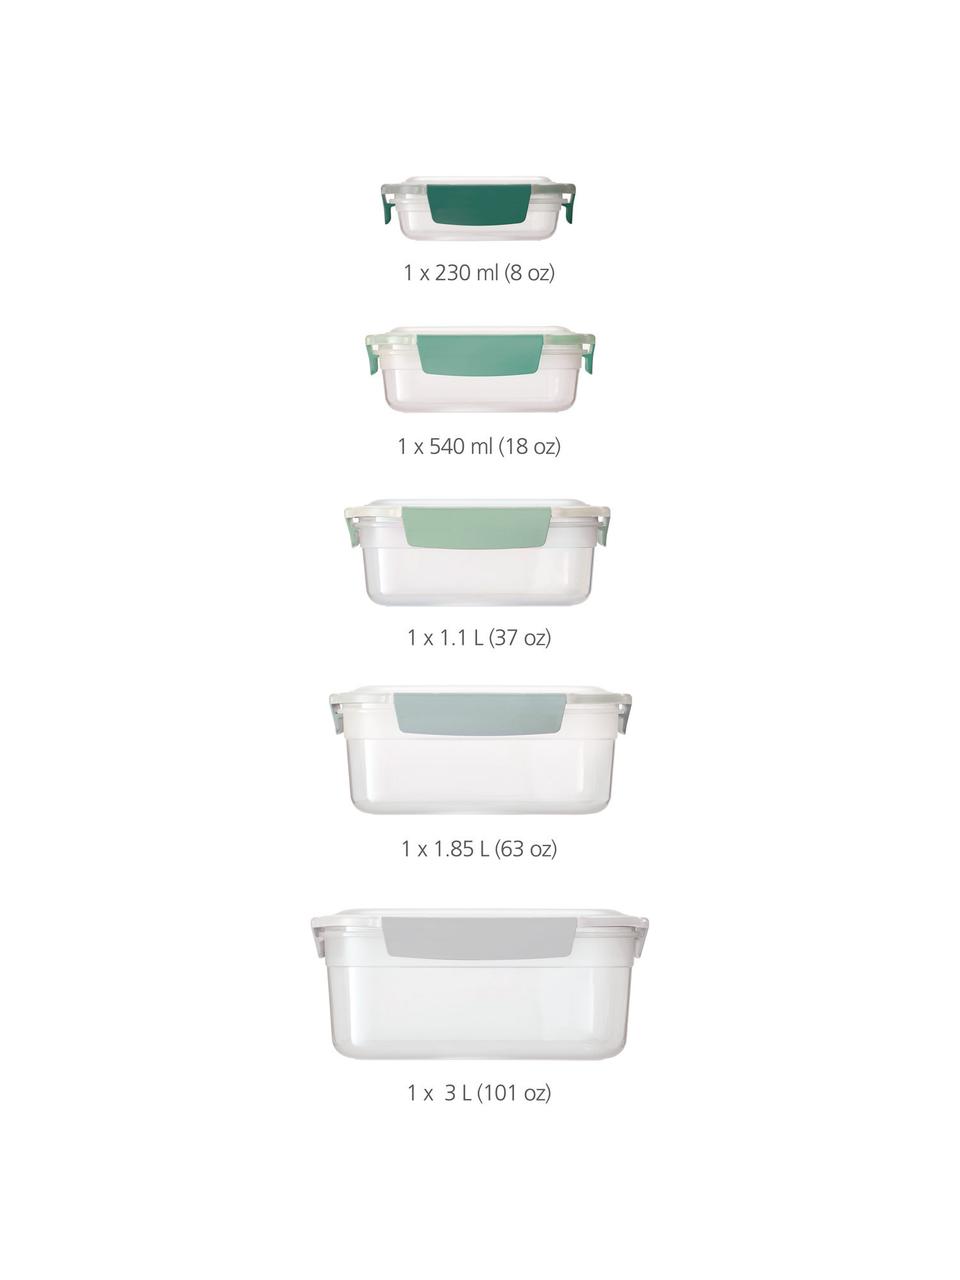 Aufbewahrungsdosen-Set Nest™, 5er-Set, Polypropylen, Transparent, Grün, Set mit verschiedenen Größen